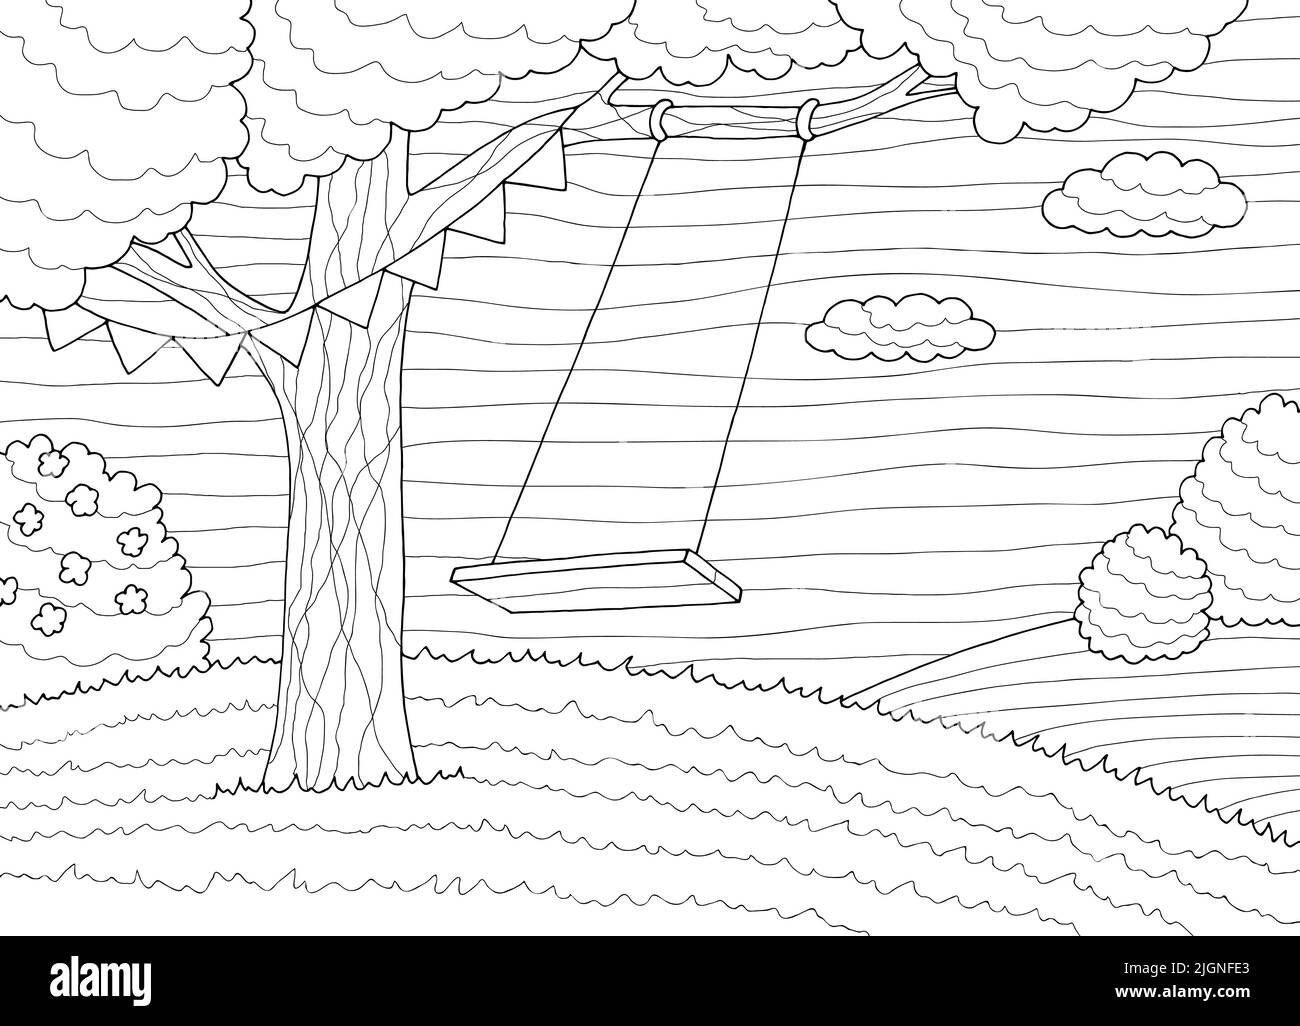 Baum Schaukel Färbung Grafik schwarz weiß Wald Lichtung Landschaft Skizze Illustration Vektor Stock Vektor